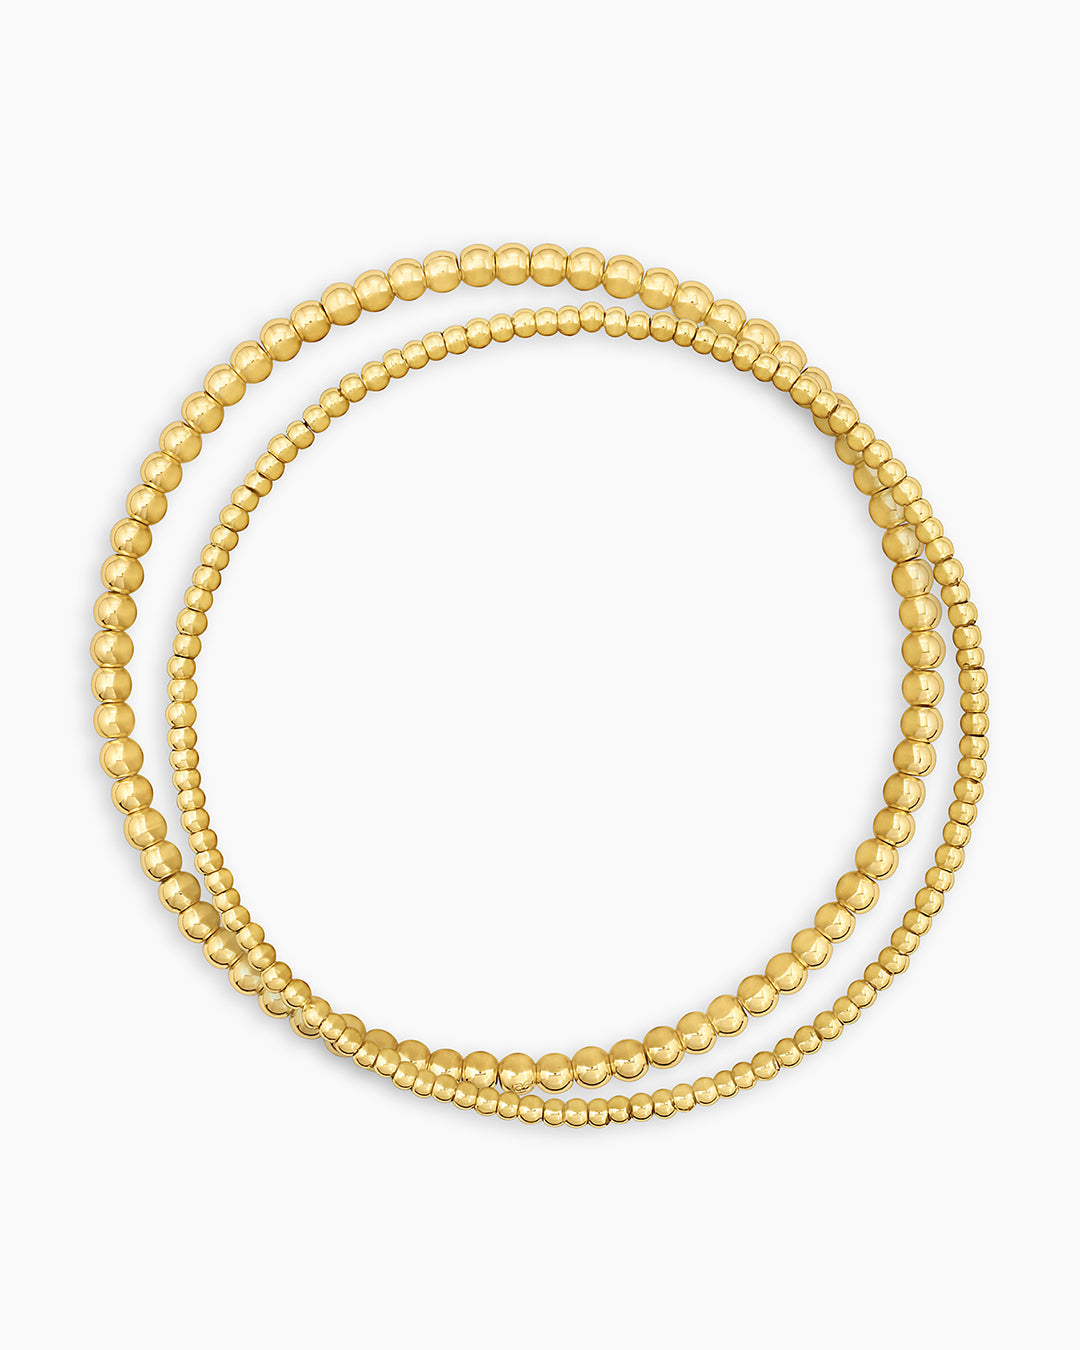 Gold Initial Bracelets for Women Girls, 14K Gold Plated Handmade Letter  Bead Bracelet Personalized Initial Gold Bracelets for Women Teen Girls  Jewelry Gifts Gold M